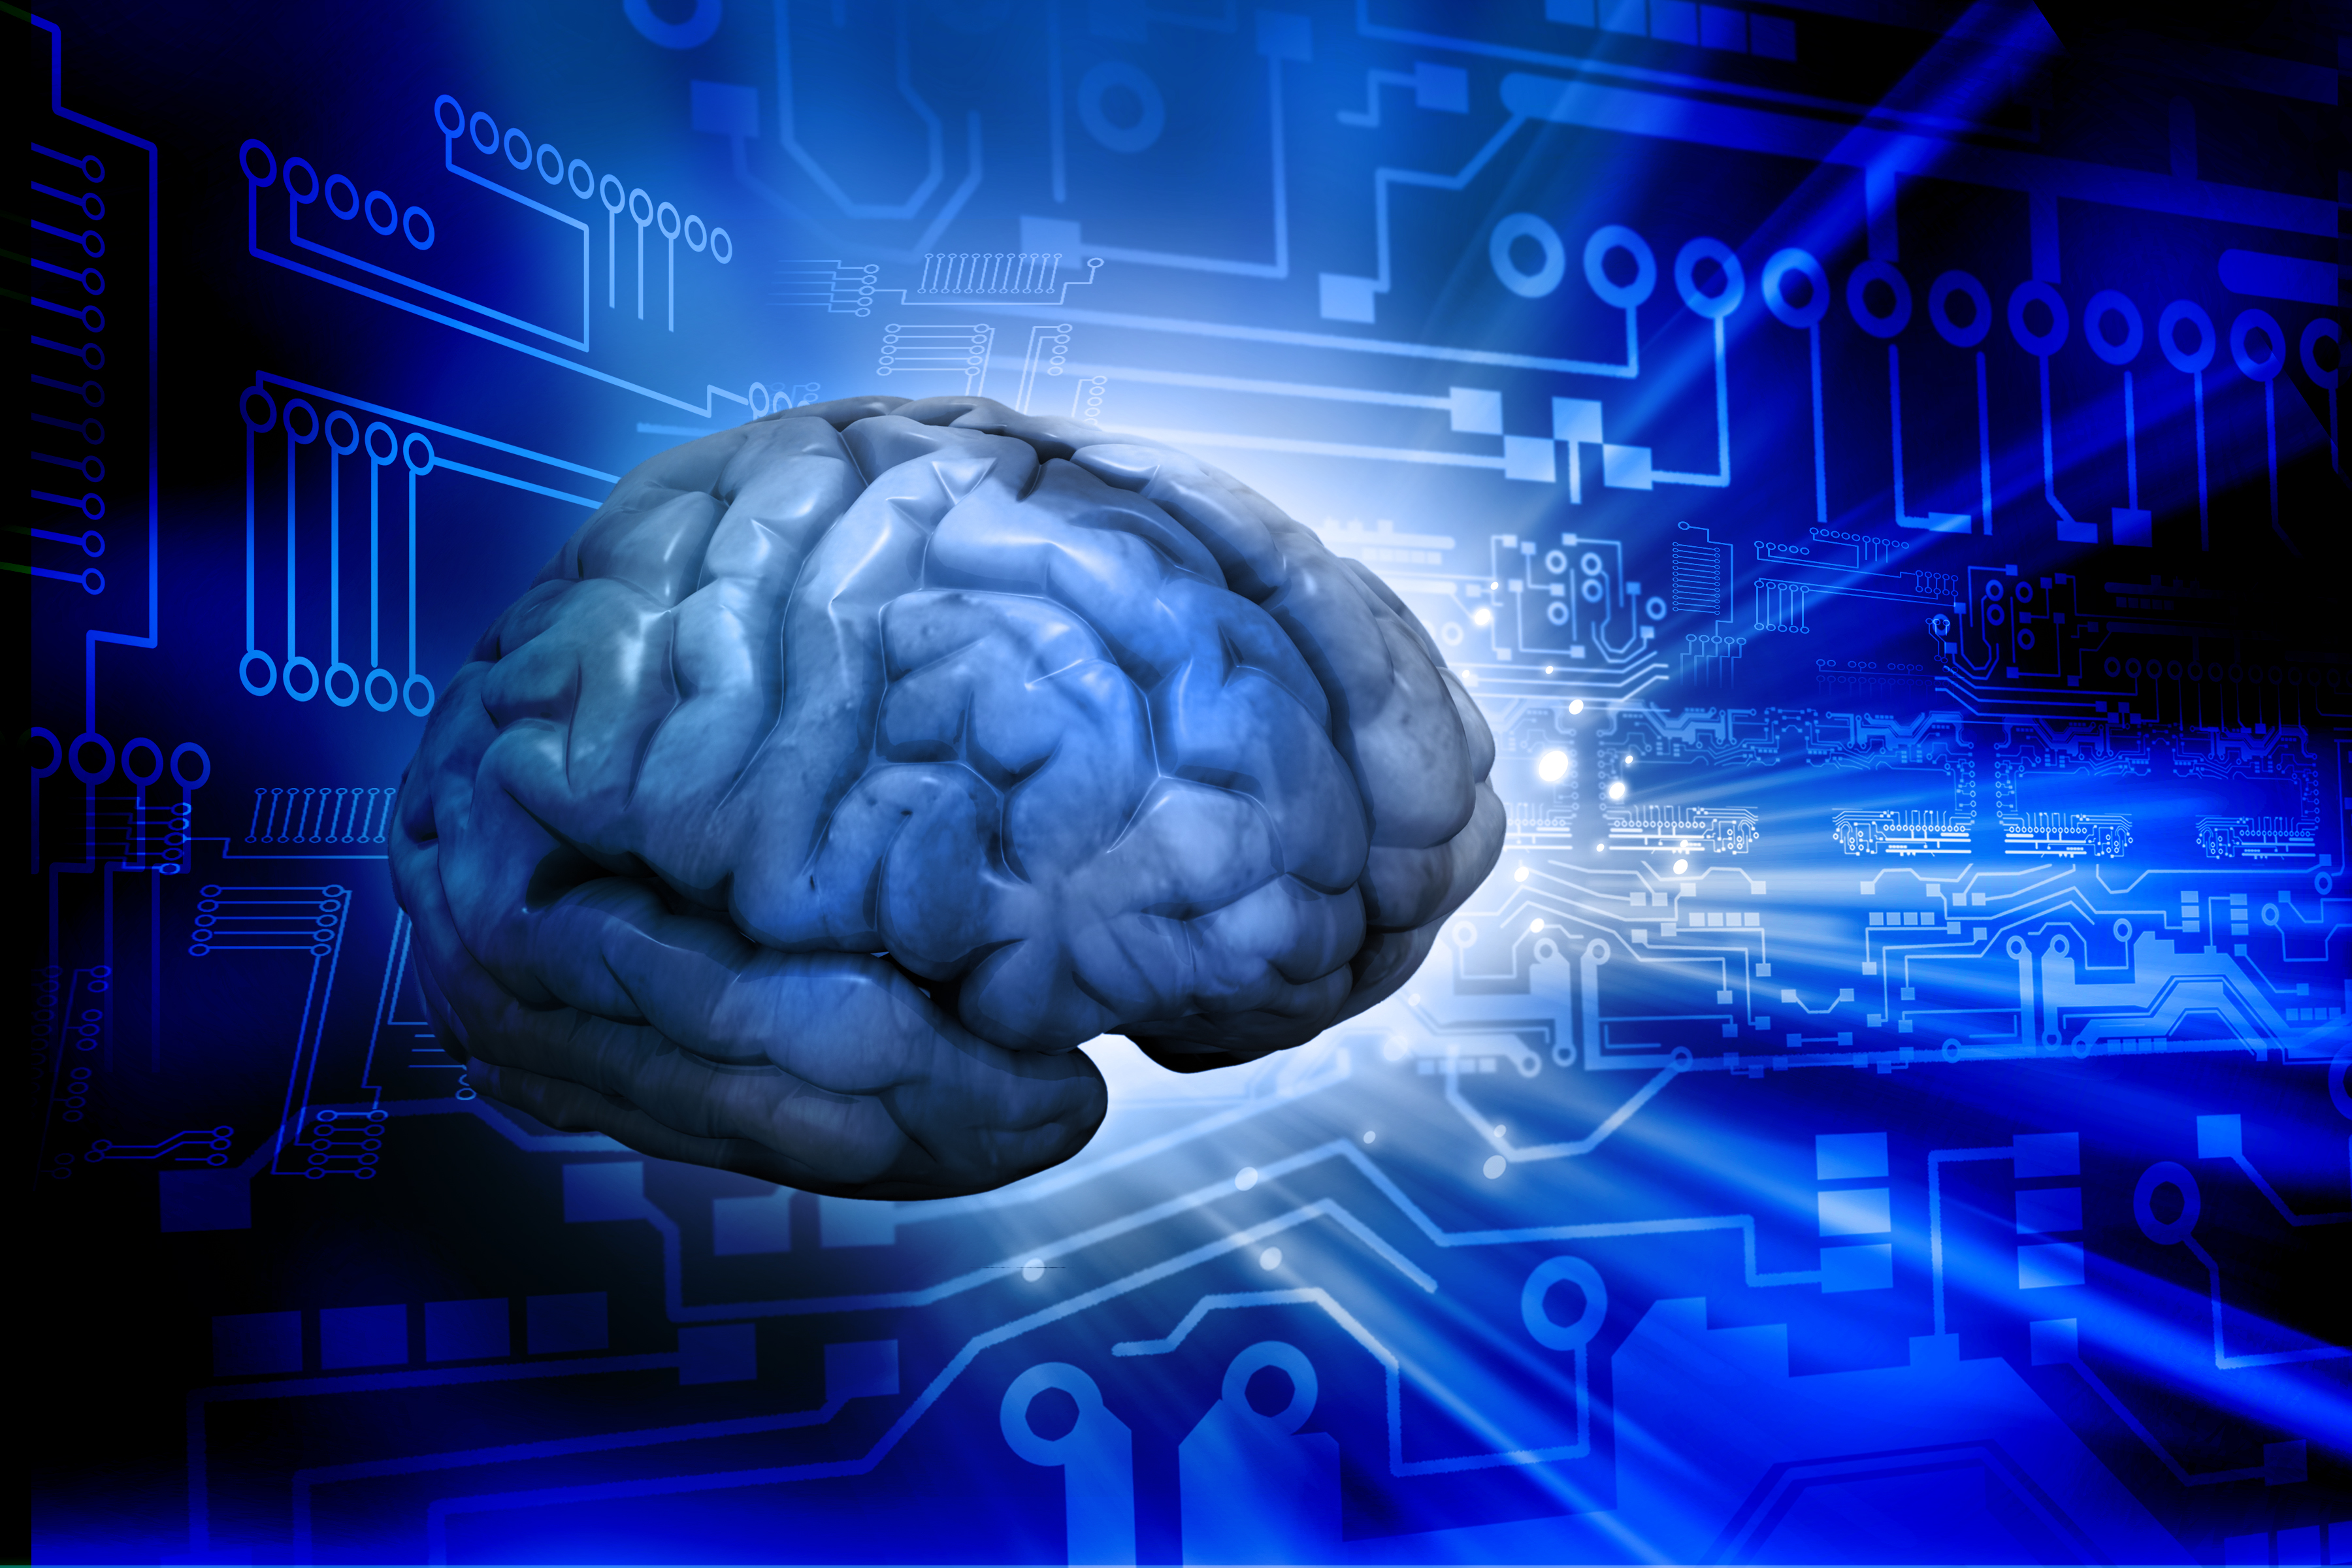 Brain information. Изучение мозга. Искусственный интеллект. Цифровой мозг.